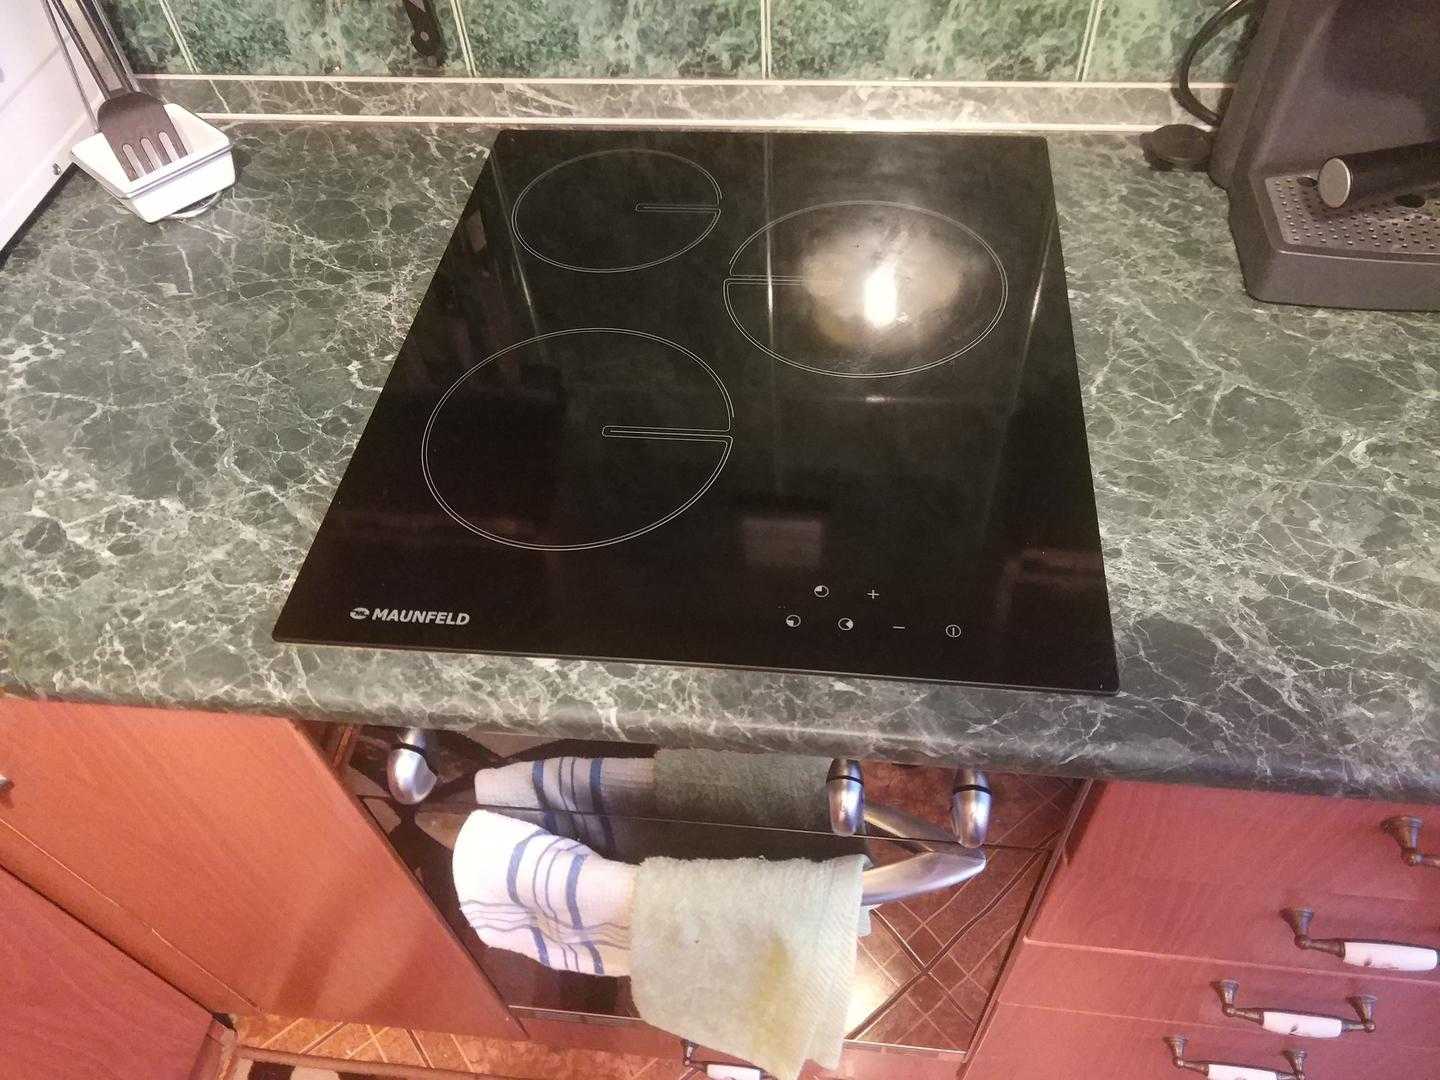 Индукционная плита не видит посуду